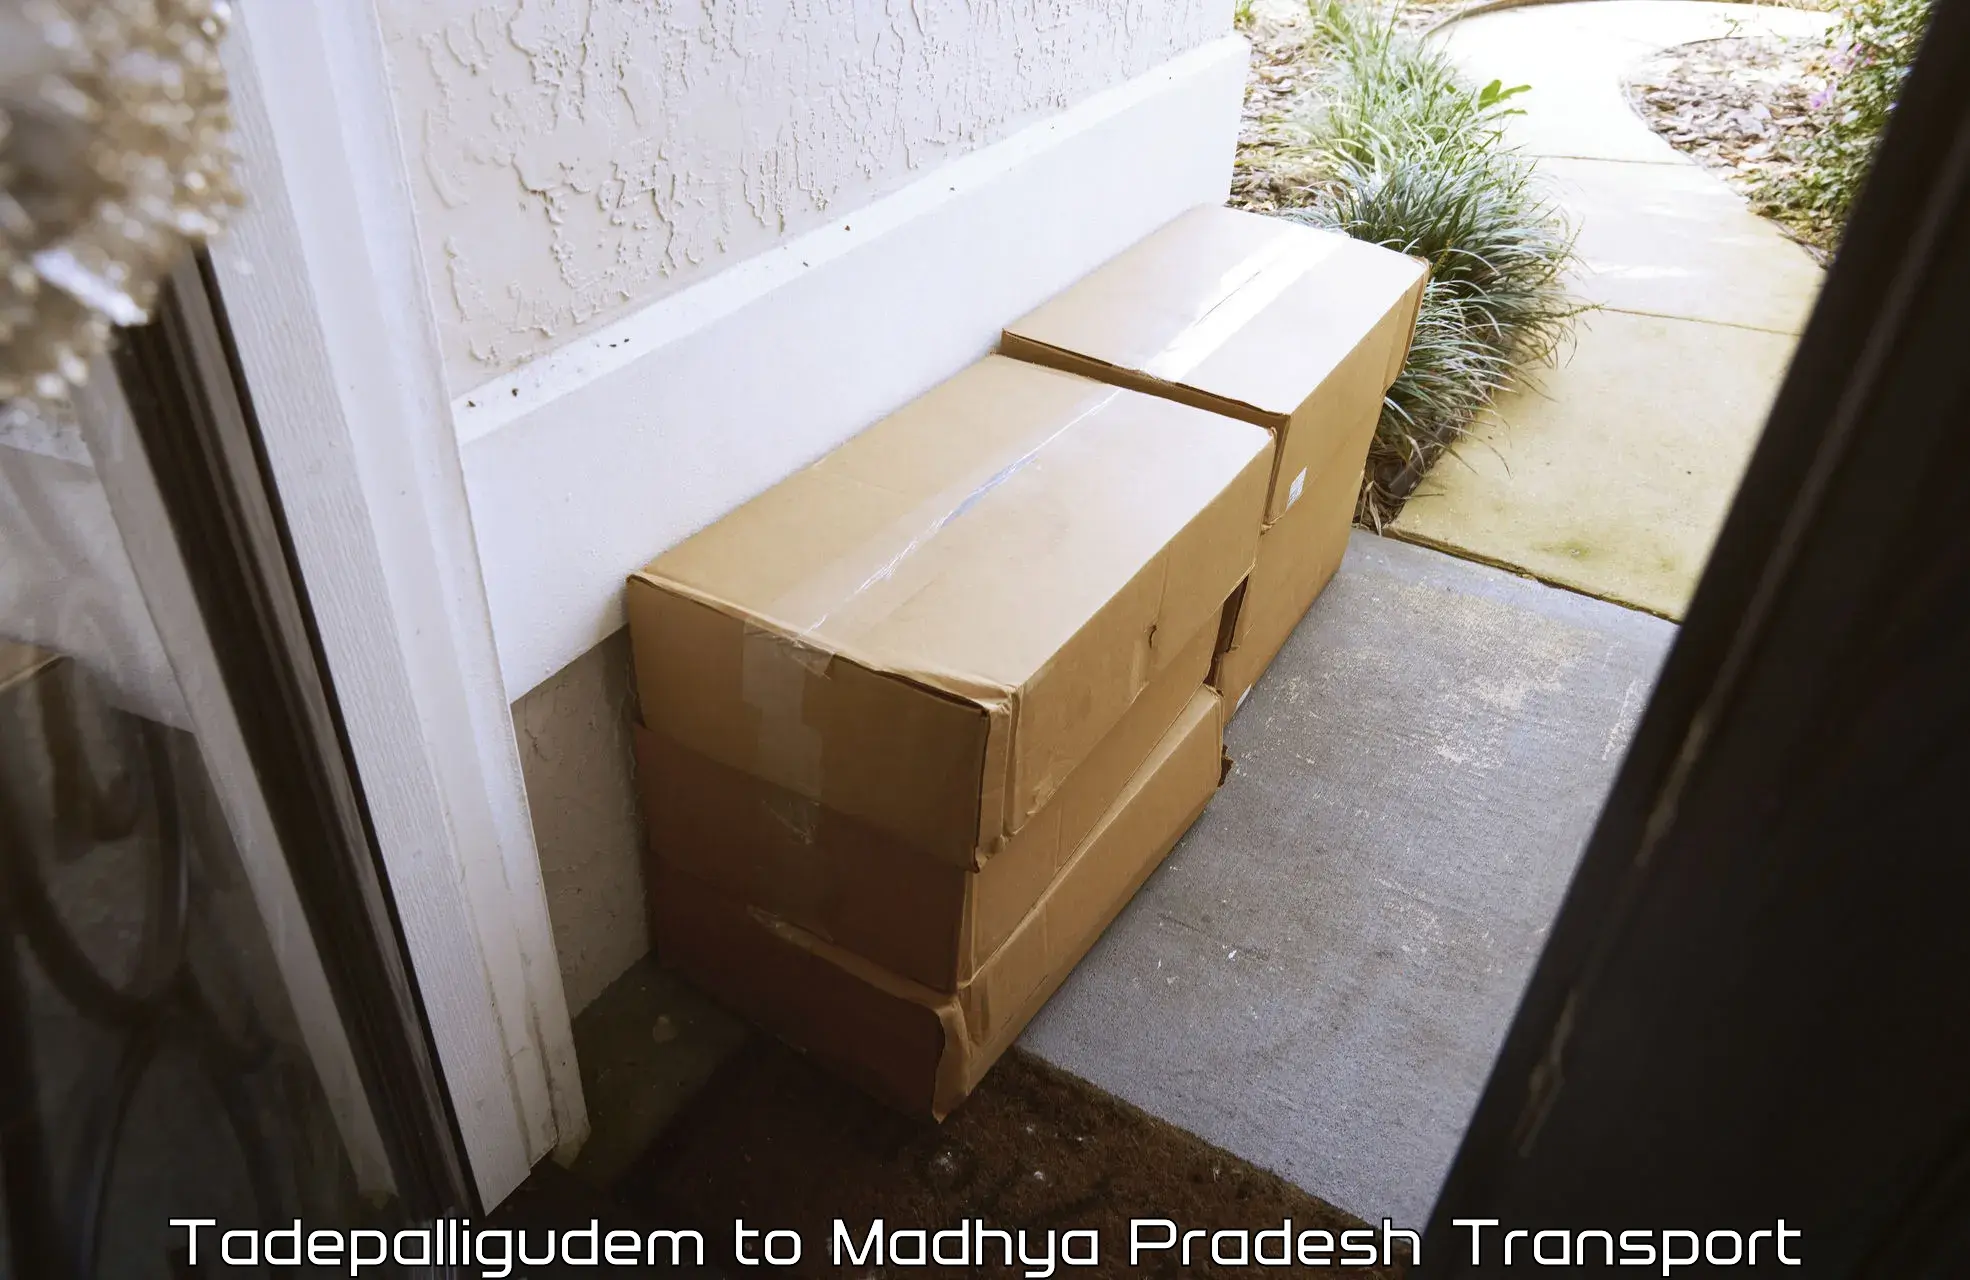 Part load transport service in India Tadepalligudem to Dewas